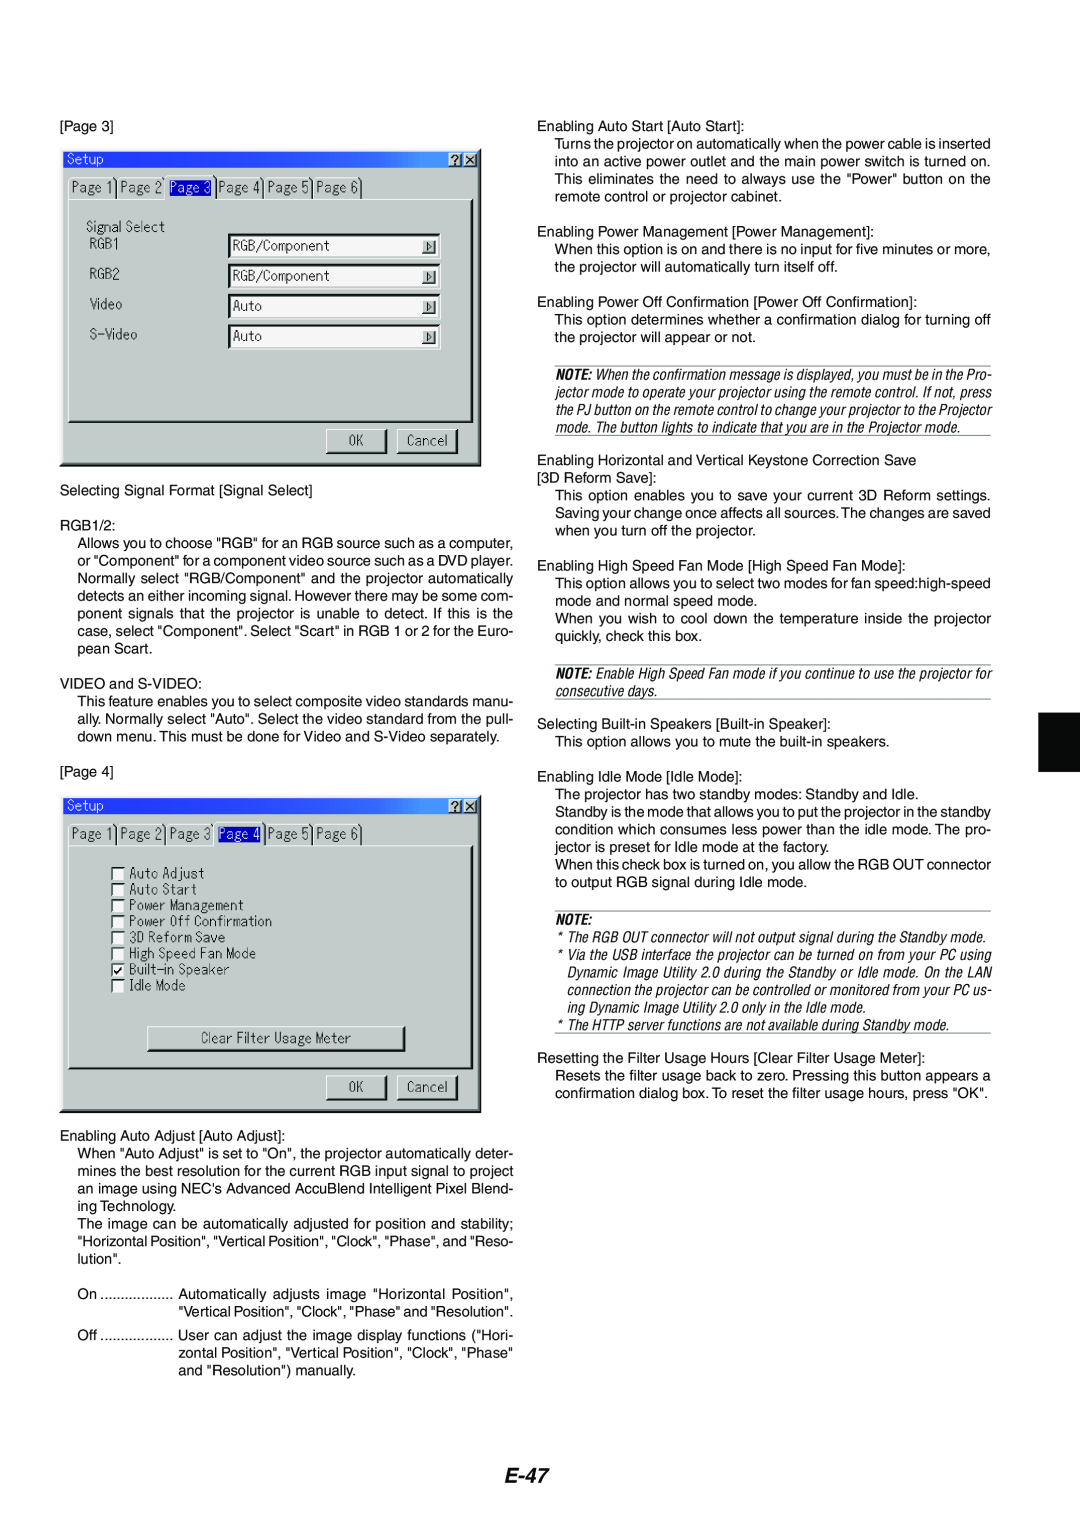 NEC MT1075/MT1065 user manual E-47 